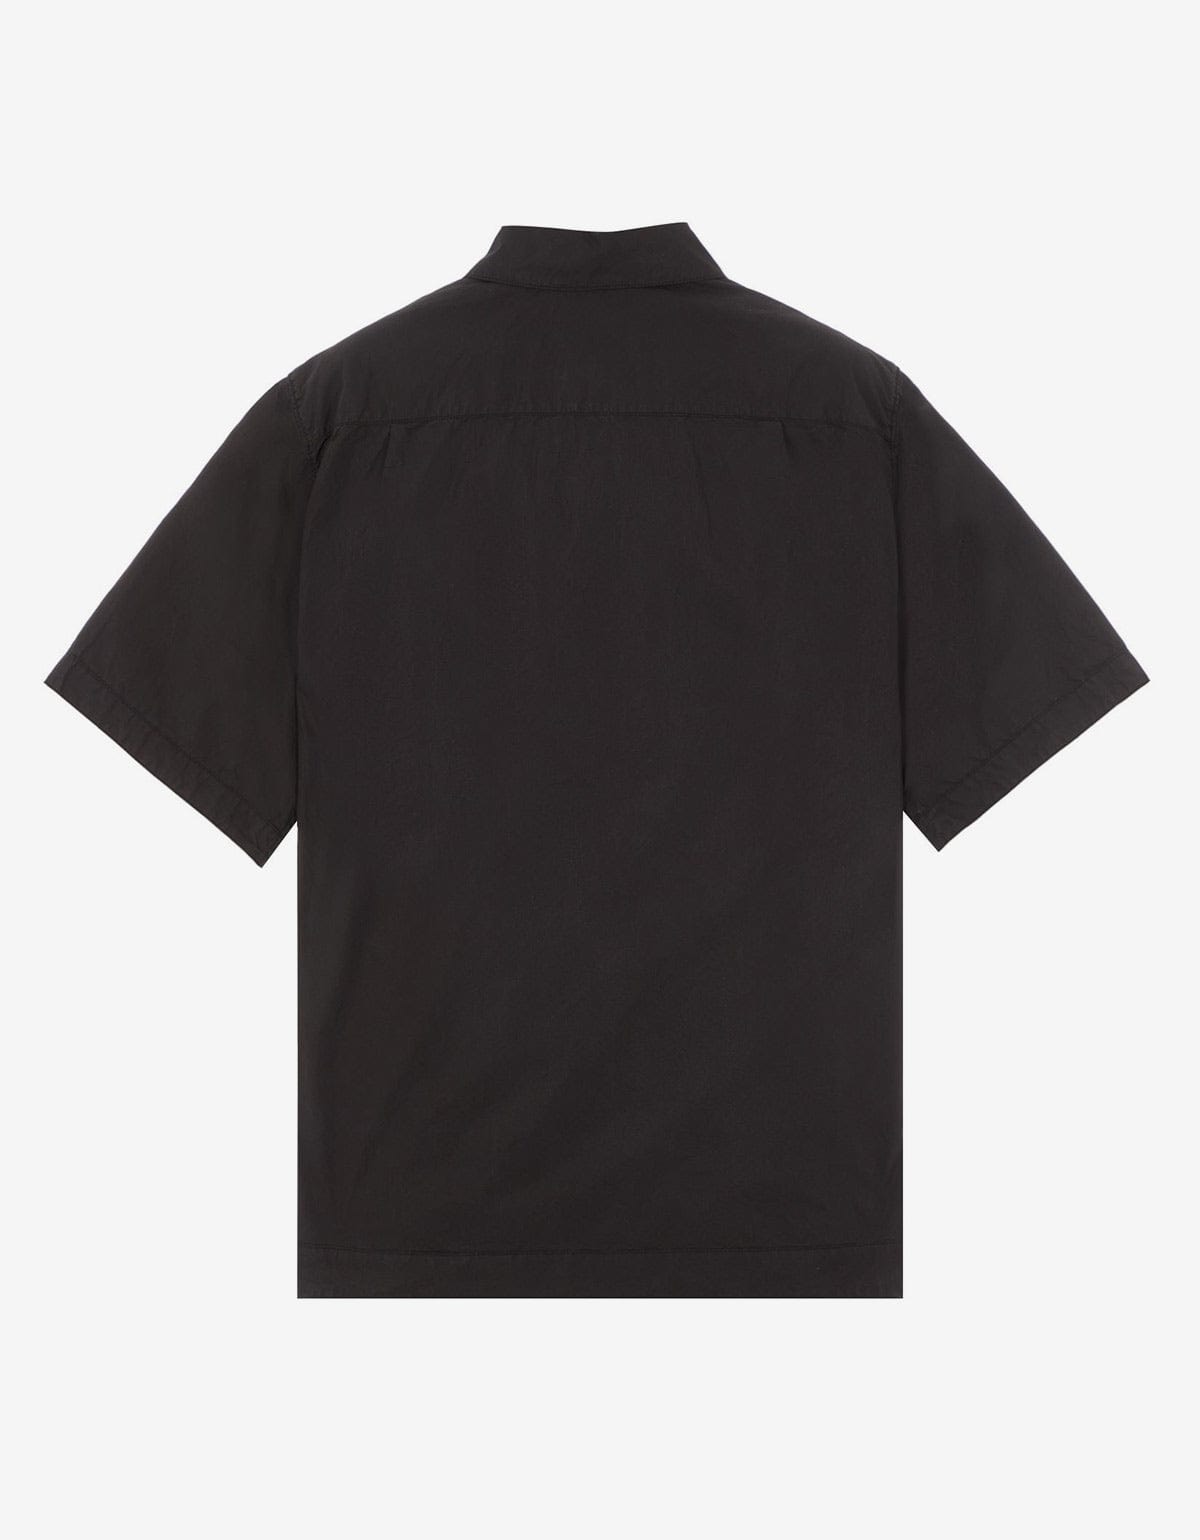 Stone Island Black Short Sleeve Overshirt